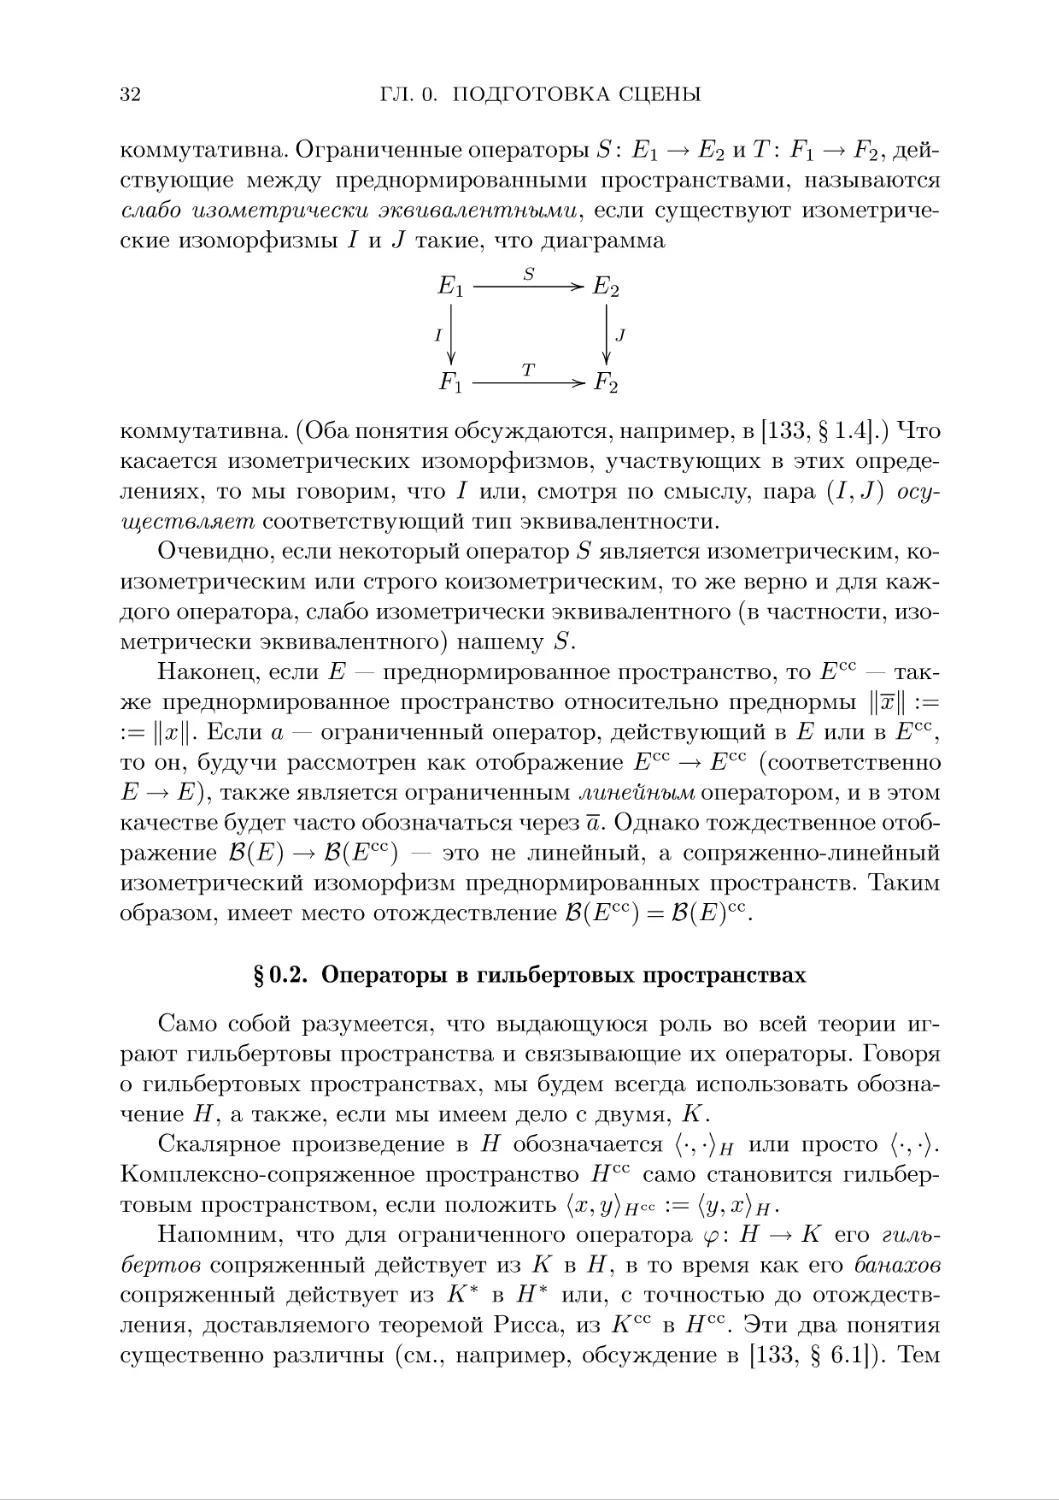 §0.2. Операторы в гильбертовых пространствах